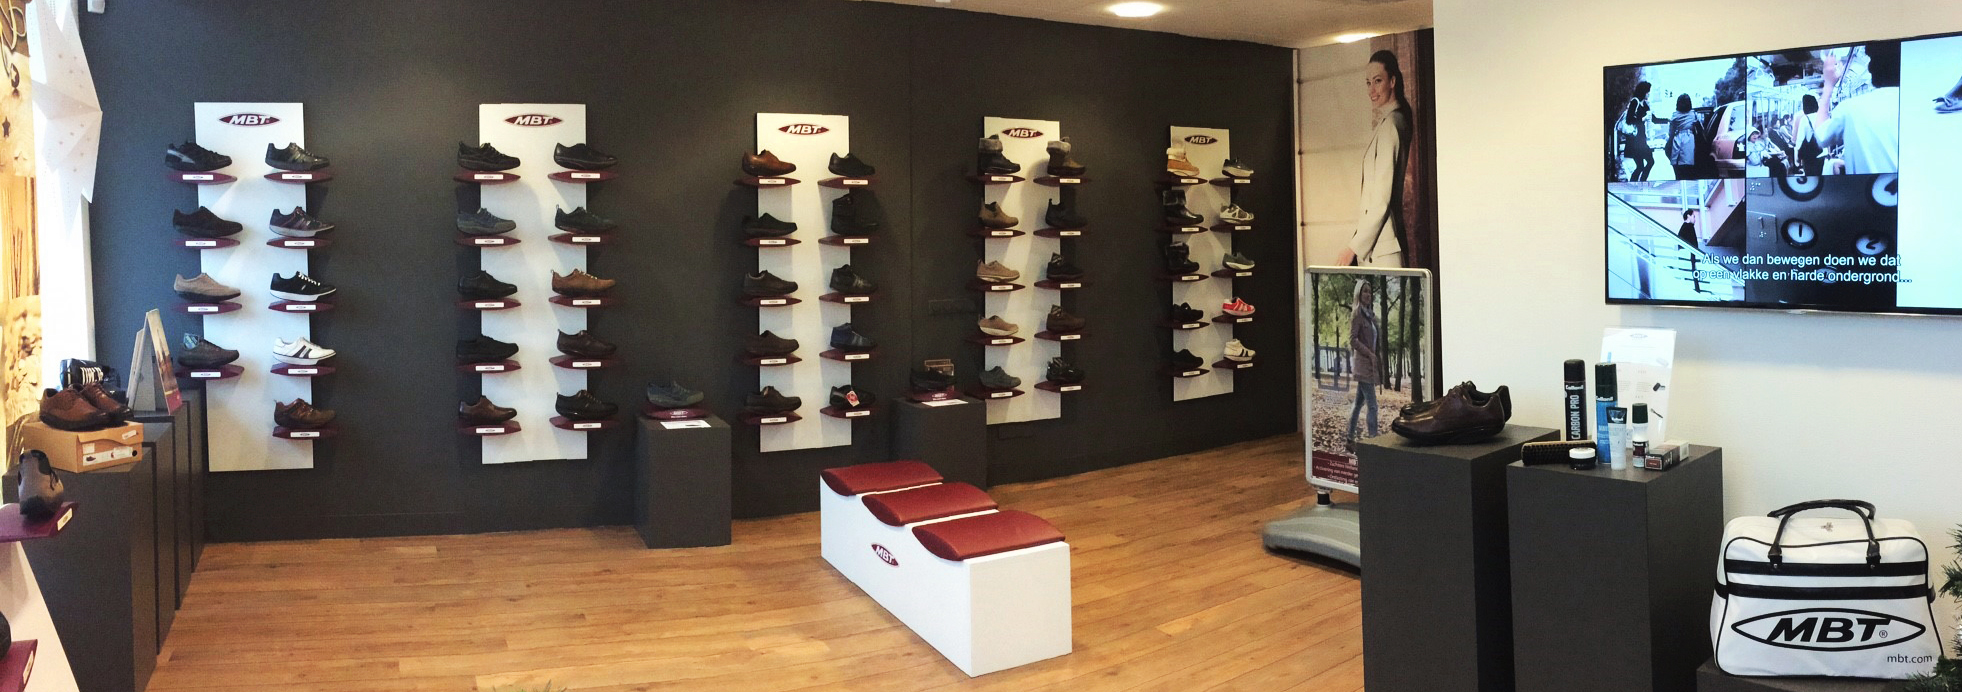 Joya - de zachtste schoen wereld! | MBT-store